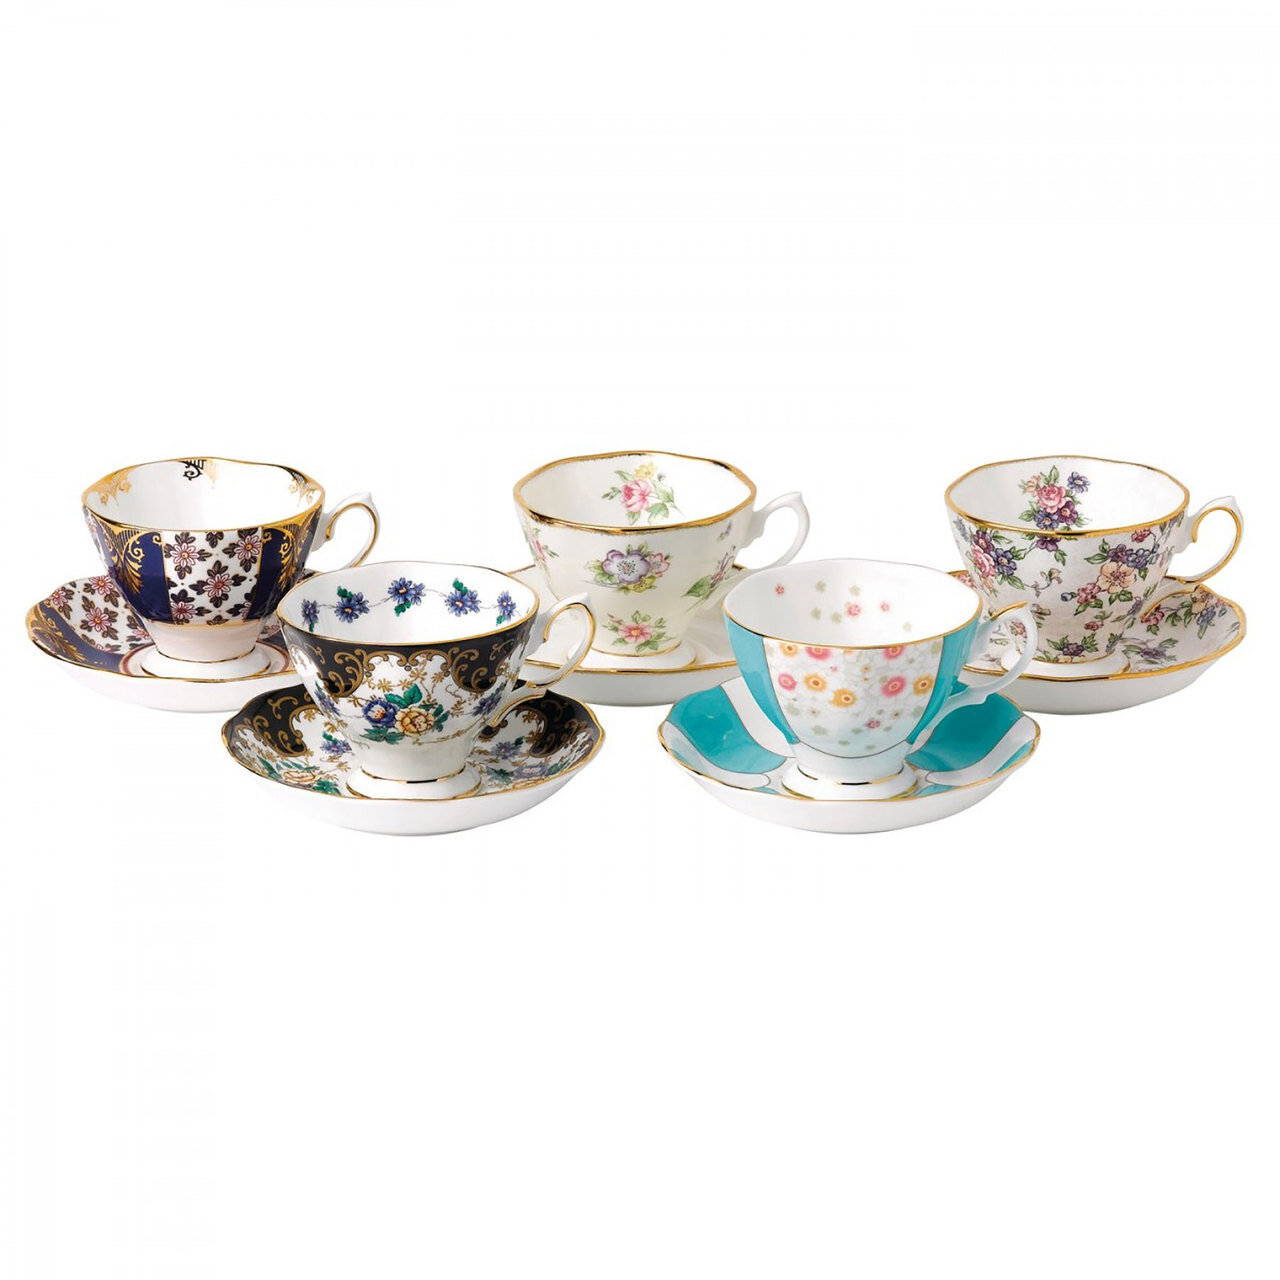 Royal Albert 100 Years 1900-1940 5-Piece Teacup & Saucer Set 40017543